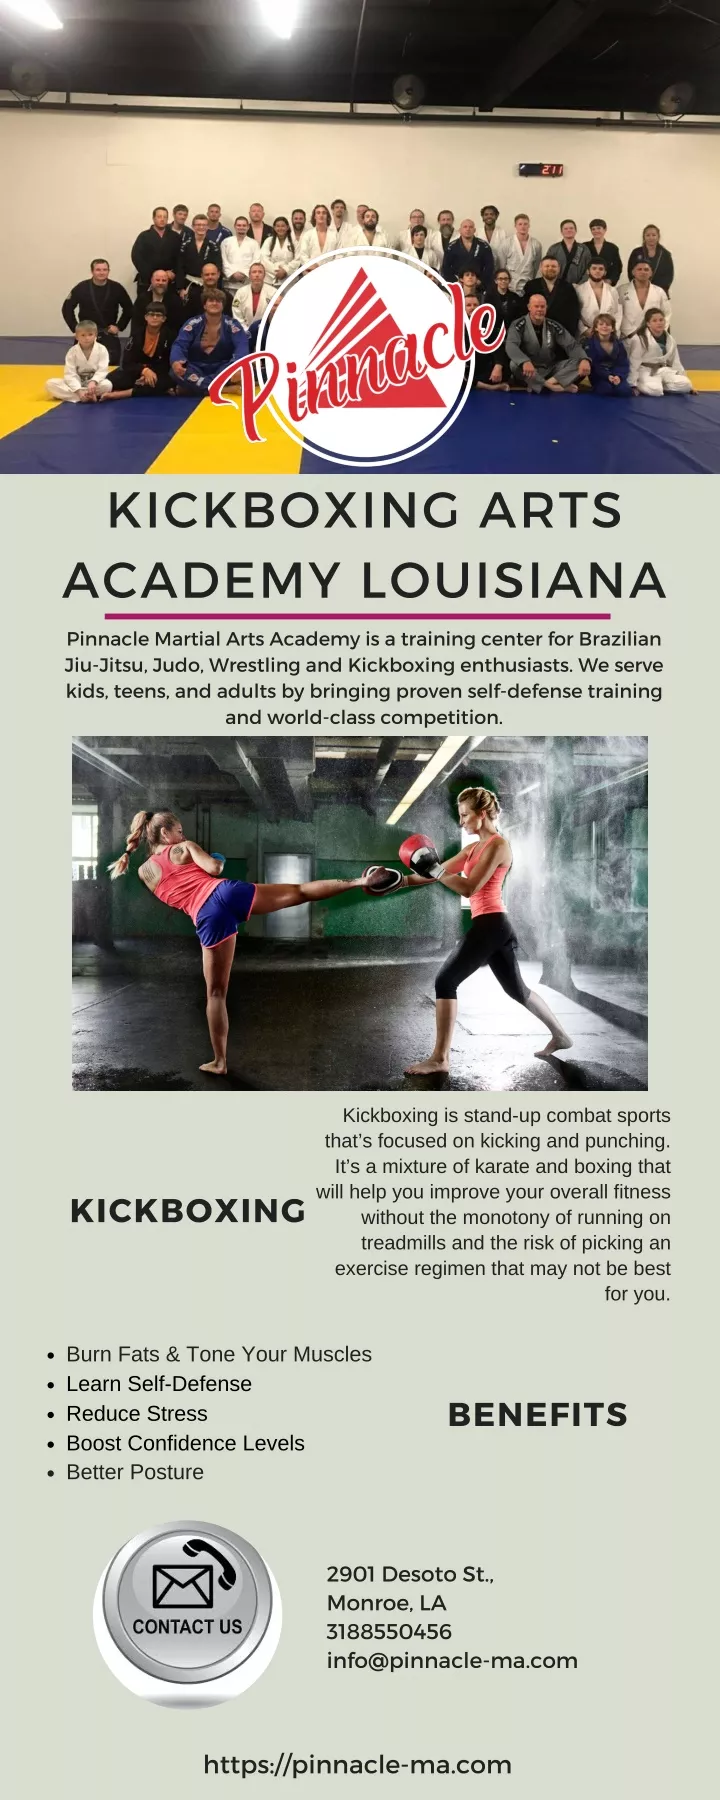 kickboxing arts academy louisiana